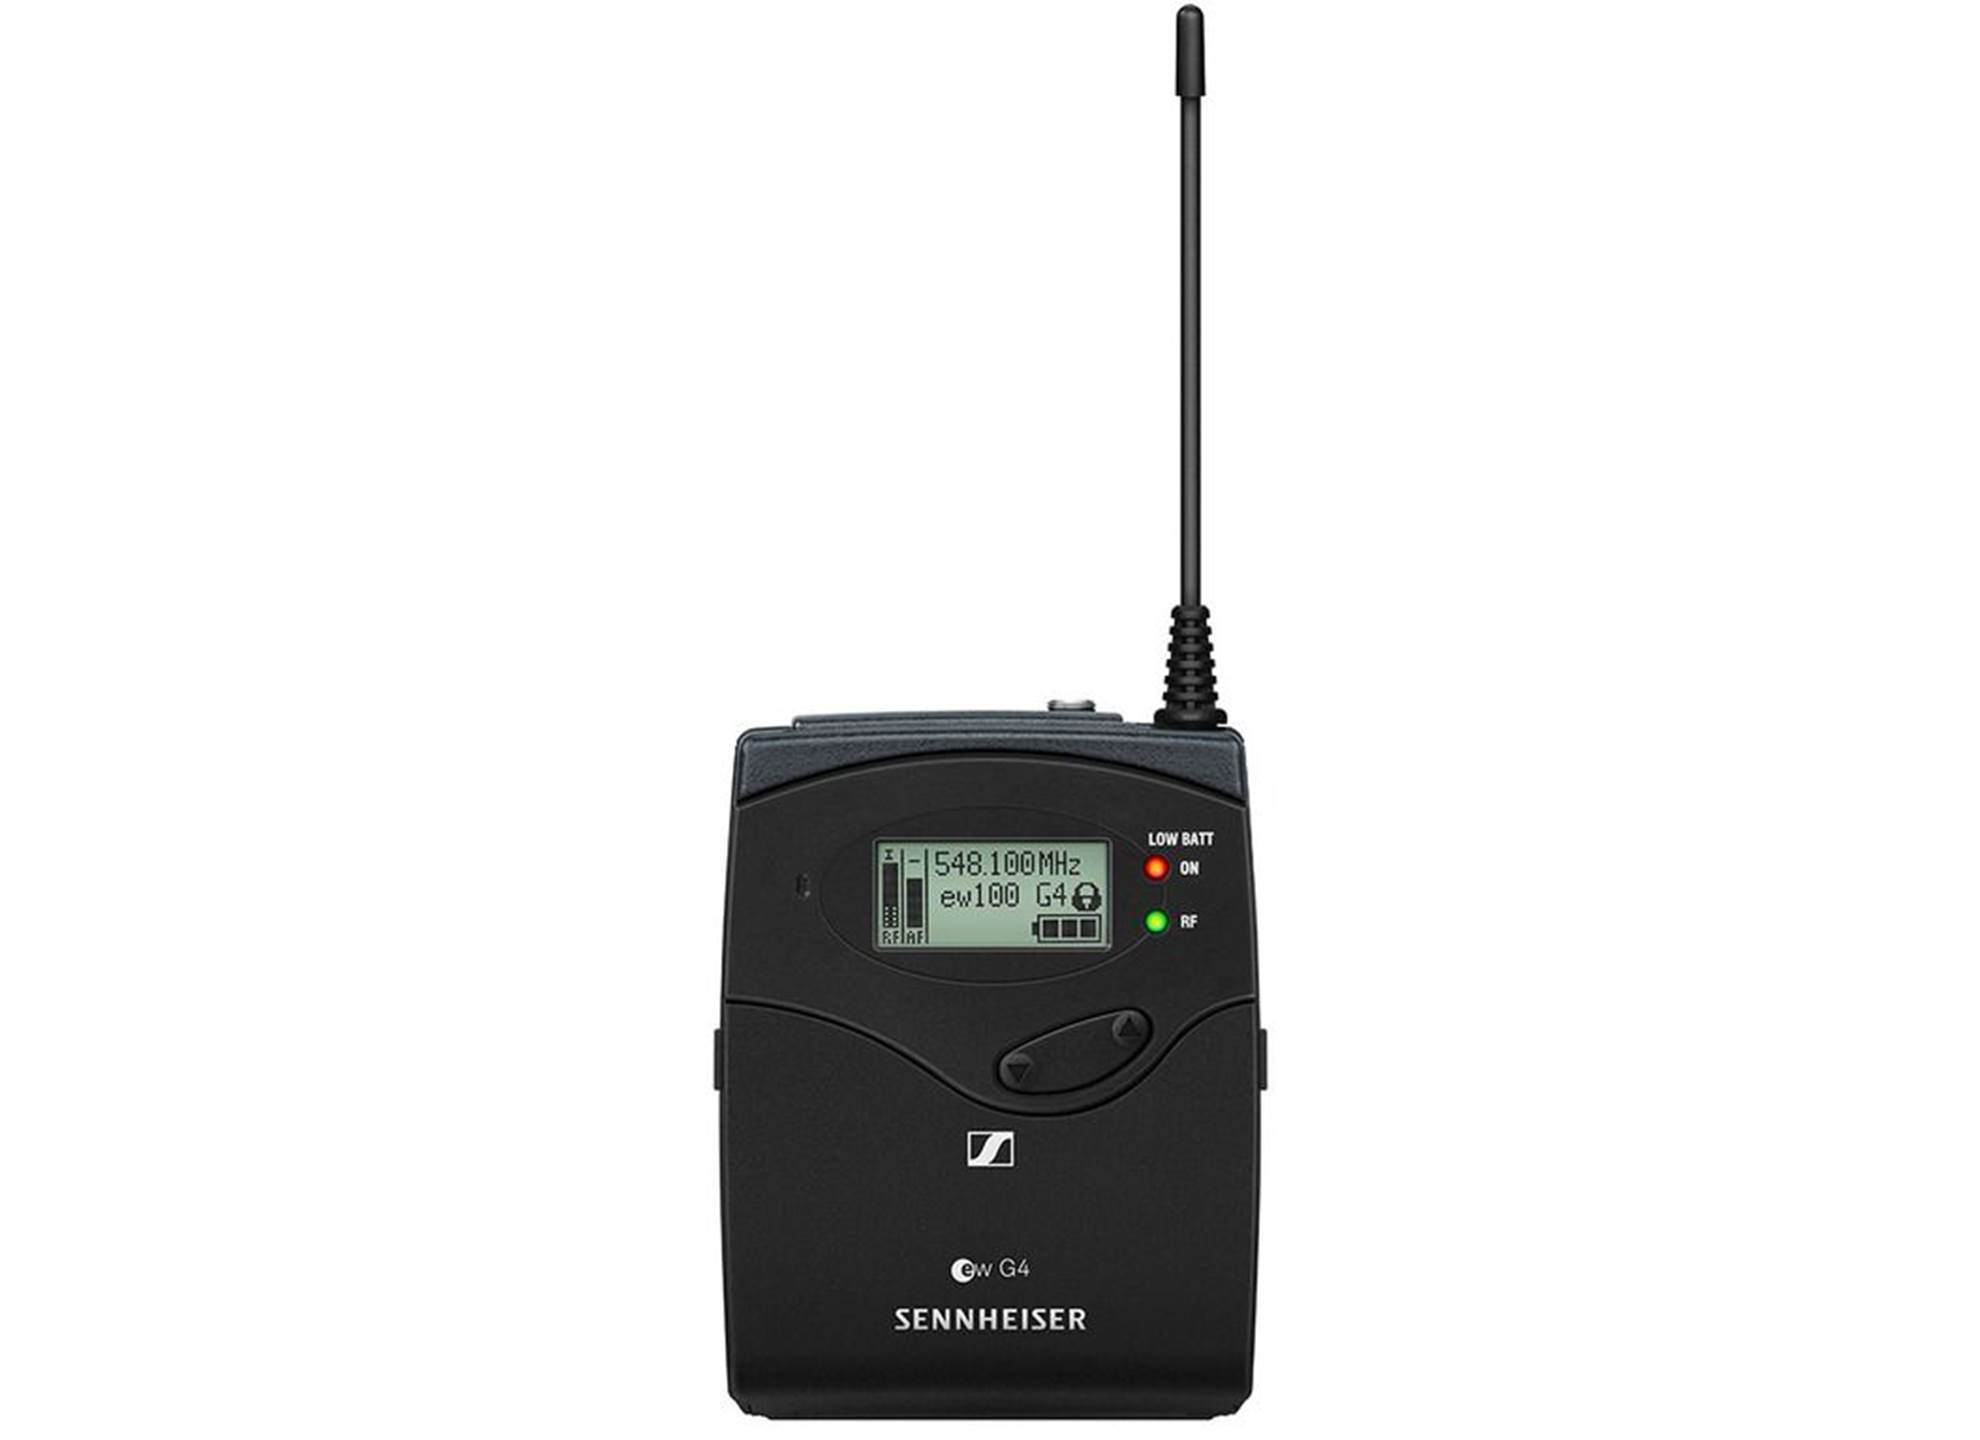 EK 100 G4-E 823 - 865 MHz